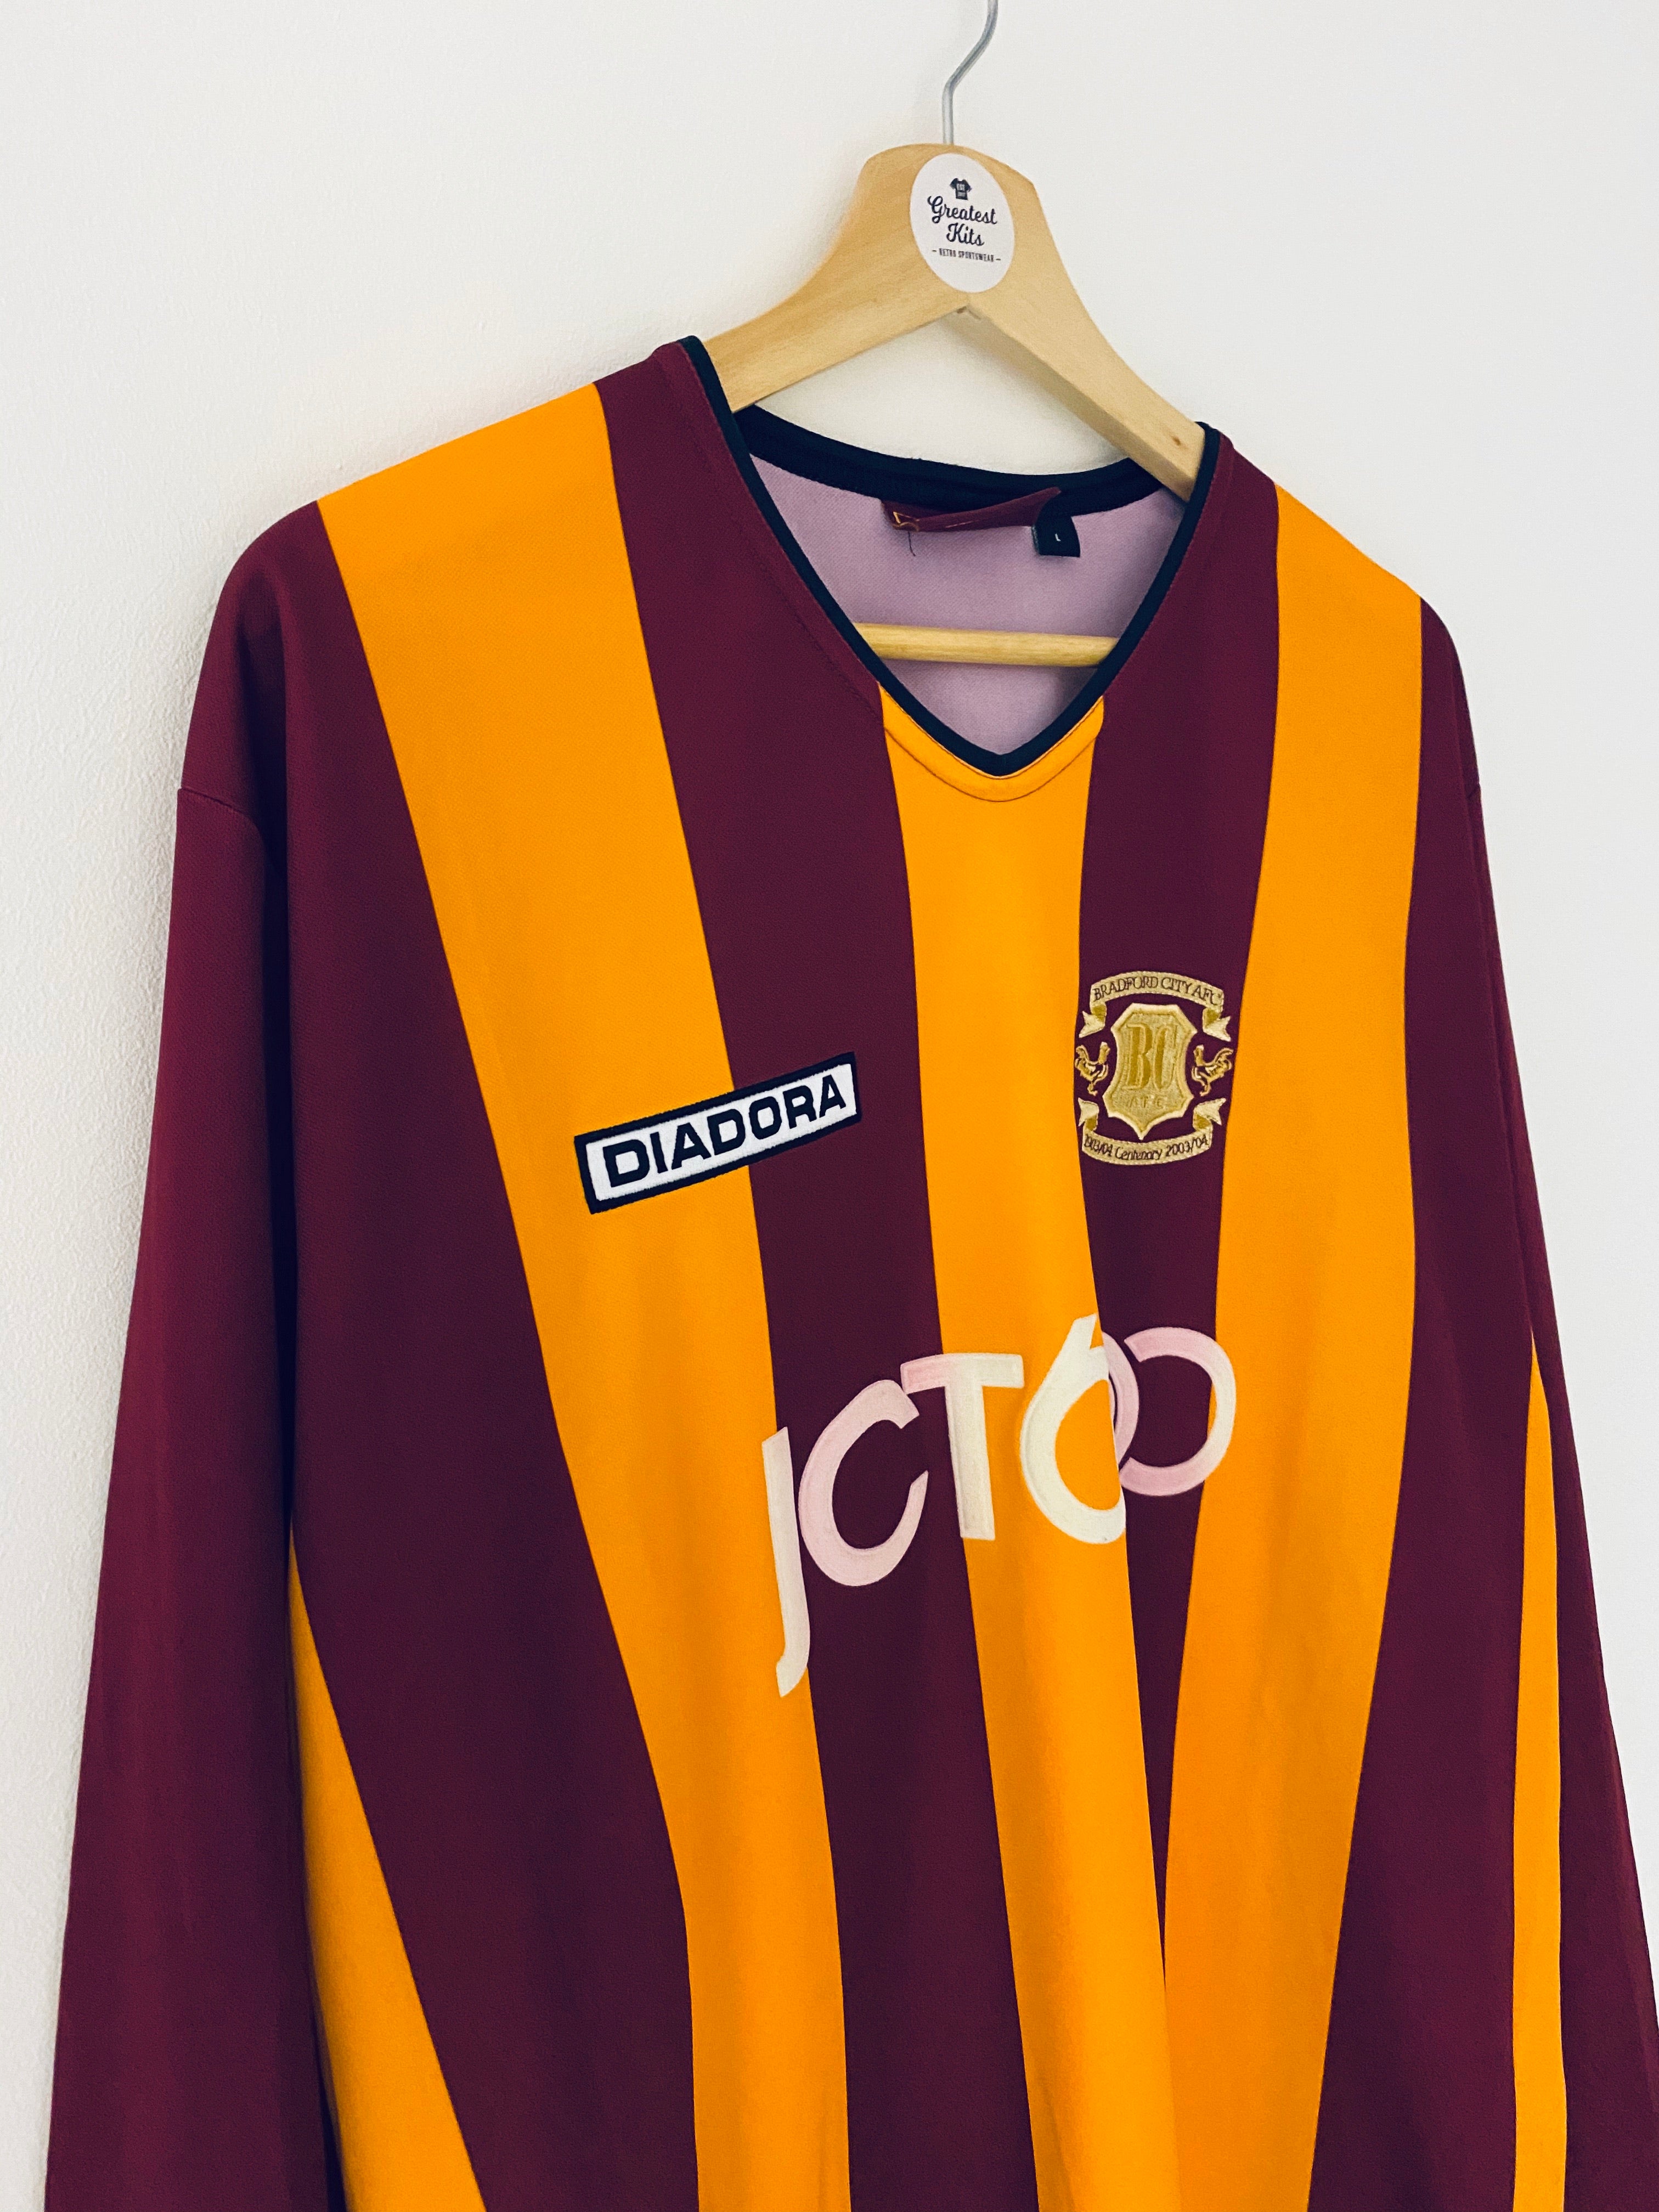 2003/04 Bradford City Home Centenary L/S Shirt (L) 8/10